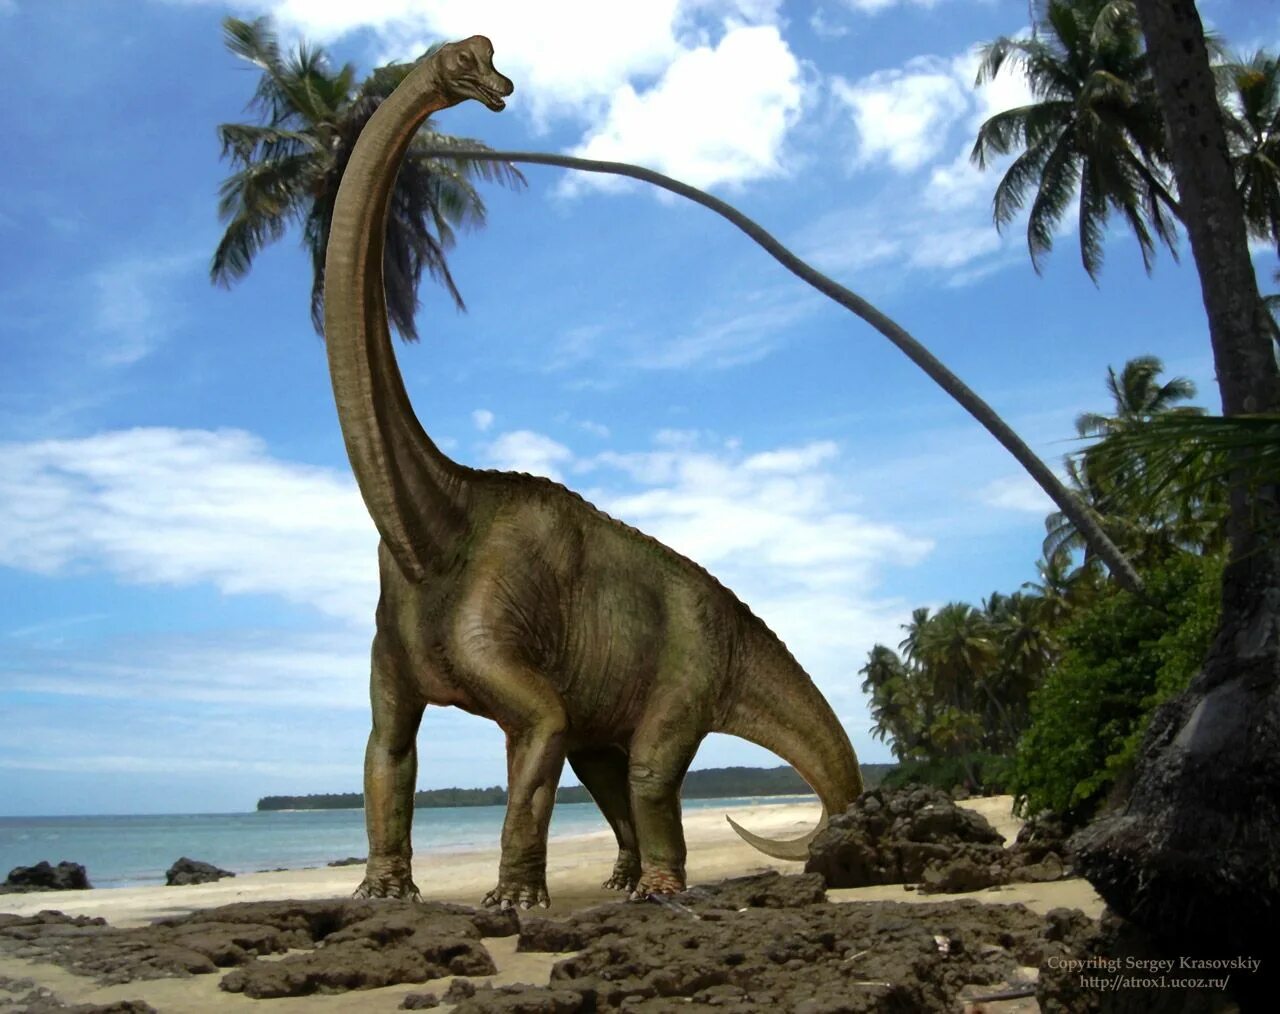 Длинношеий динозавр. Травоядные динозавры Брахиозавр. Жираффатитан динозавр. Травоядные динозавры Диплодок. Жираффатитан зауропод.